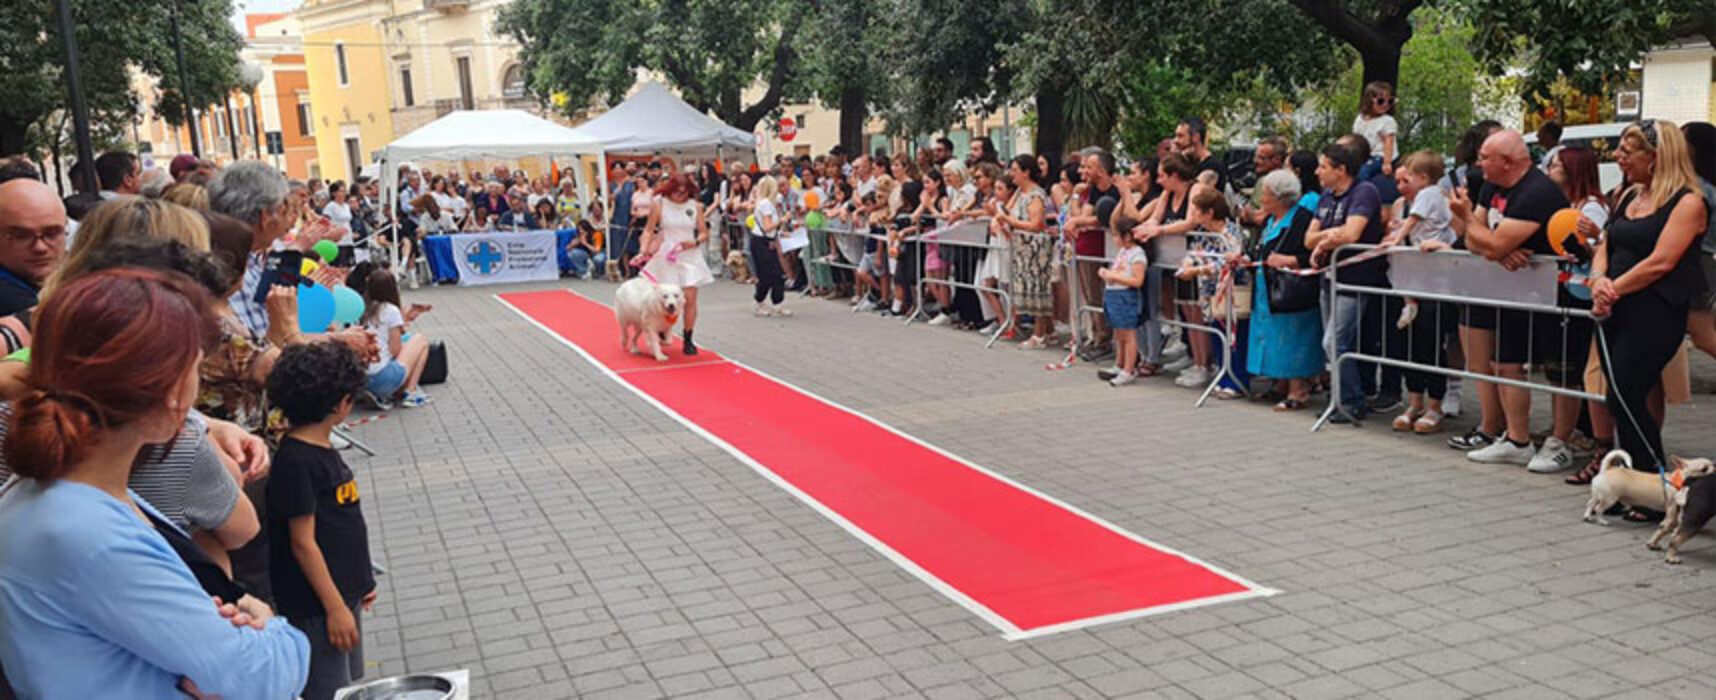 Successo di pubblico per la prima sfilata canina organizzata da Enpa Bisceglie